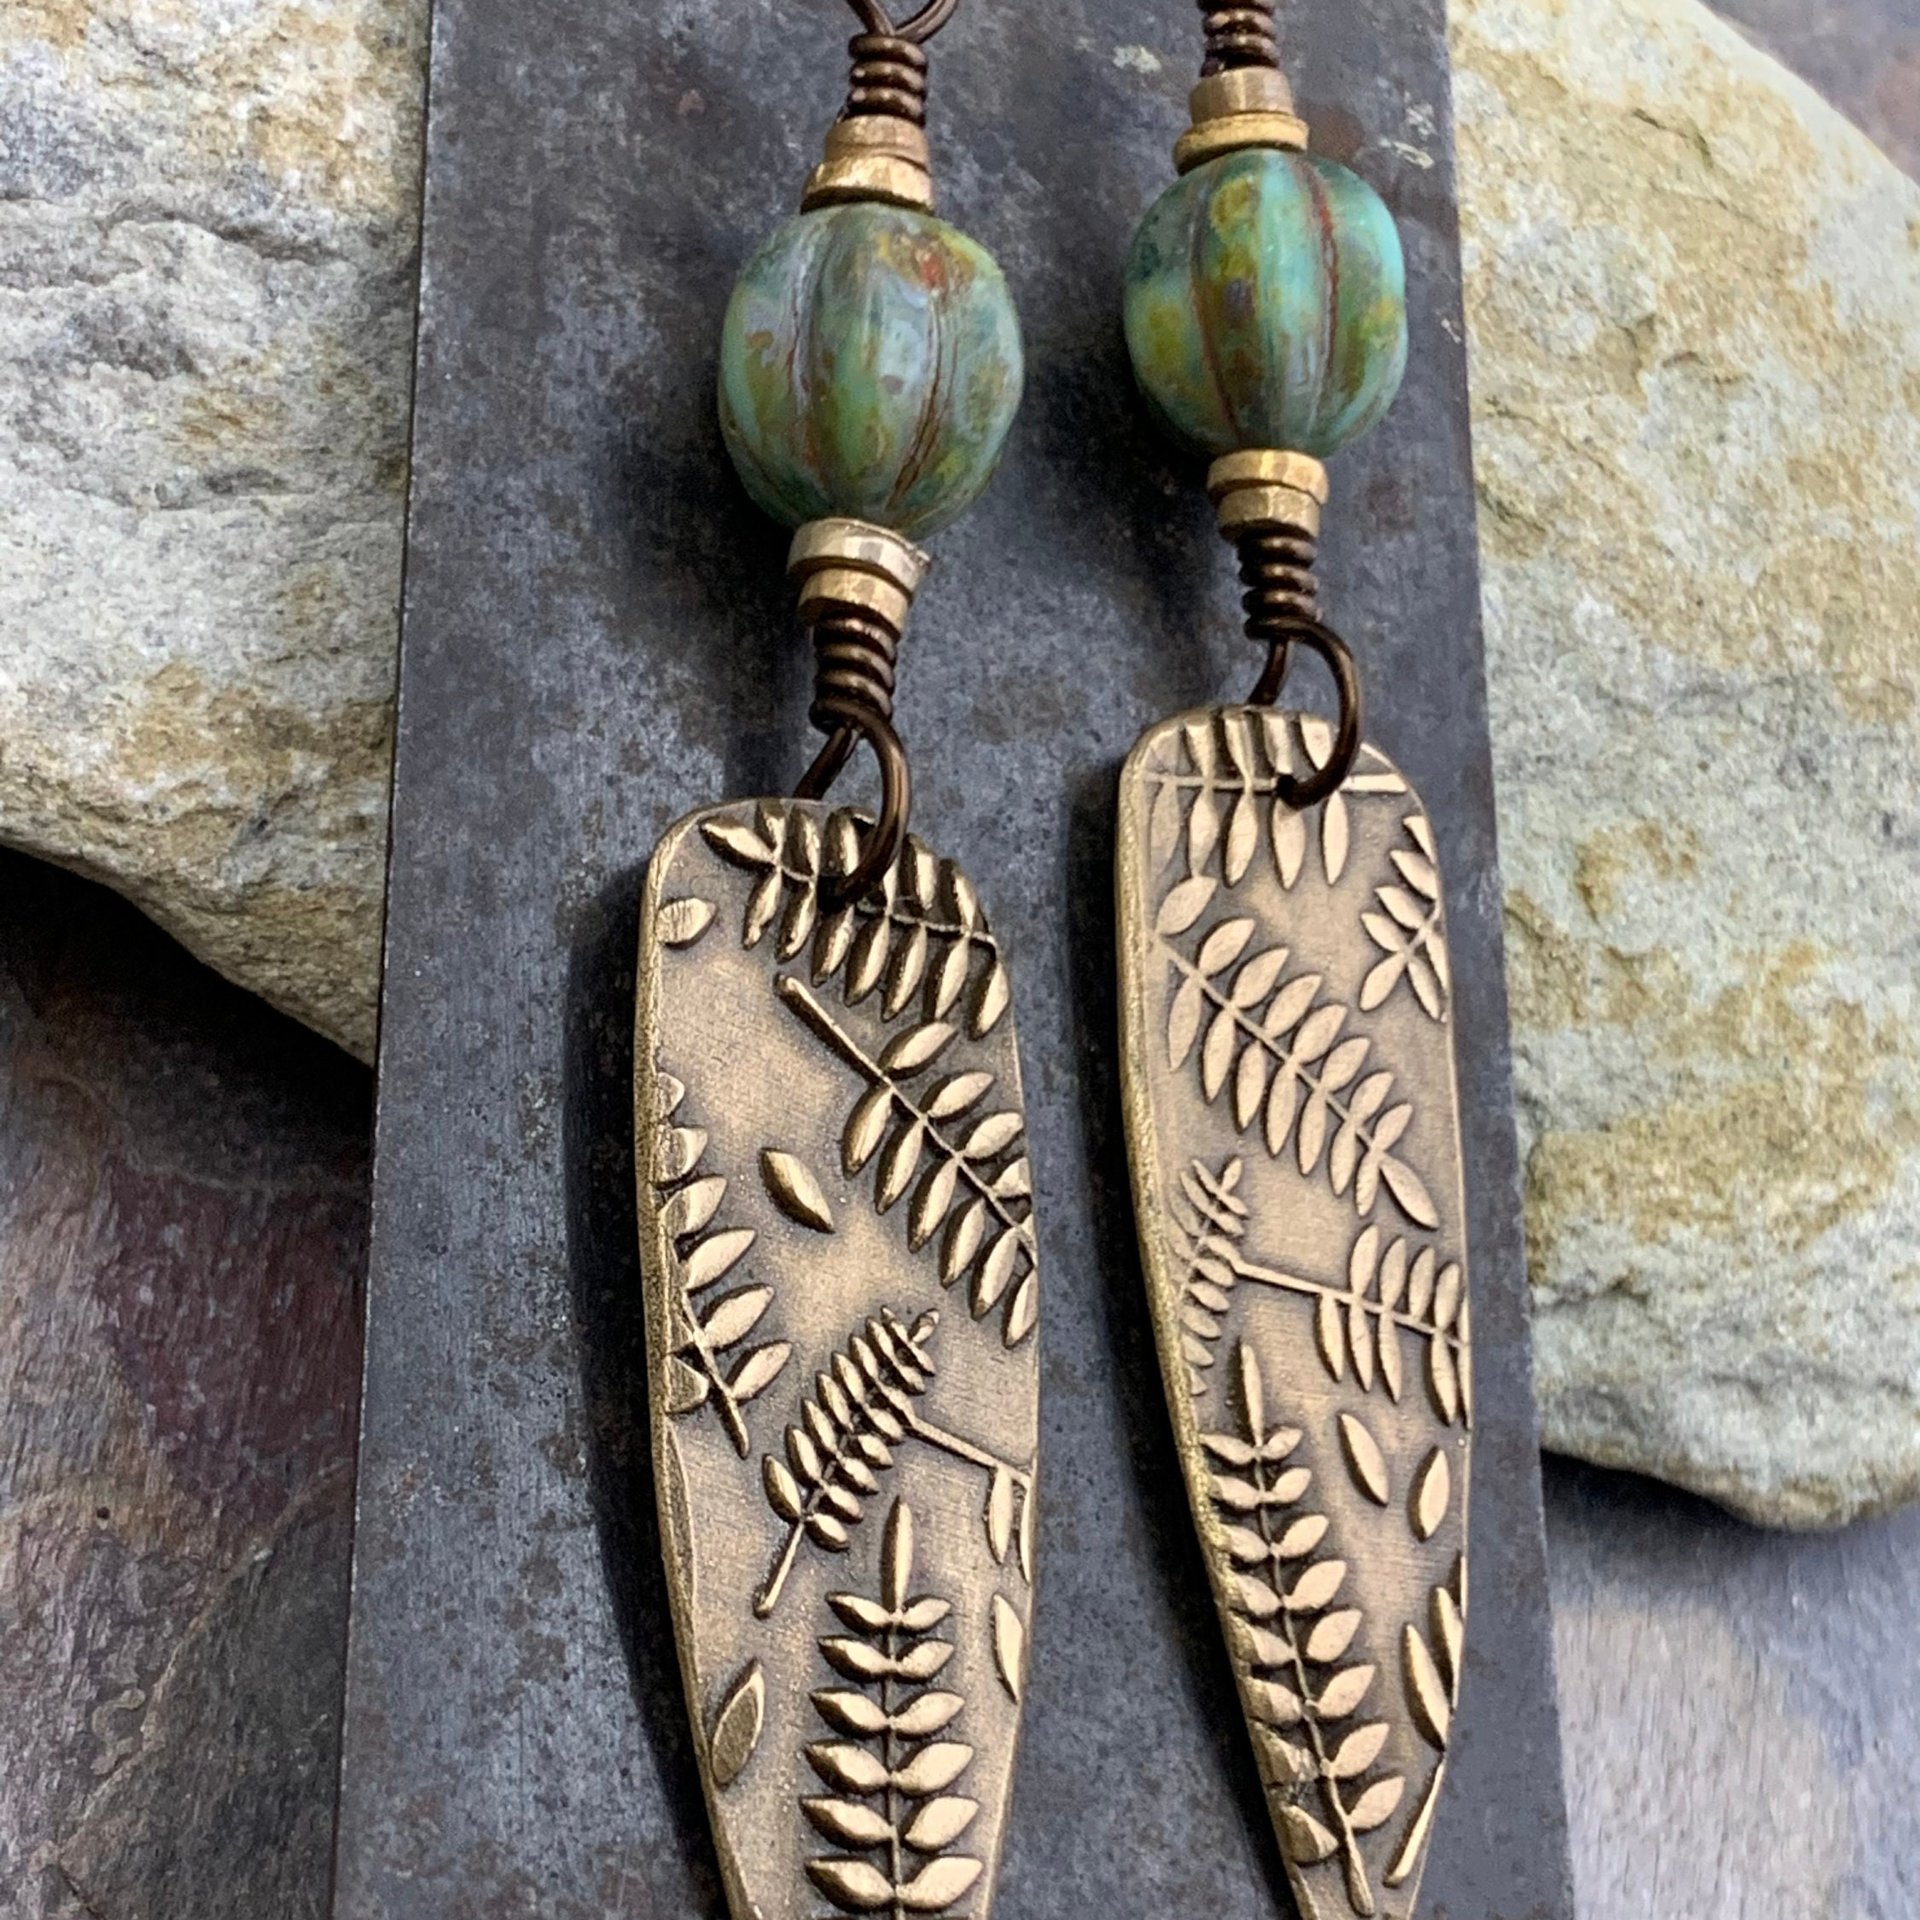 Fern Earrings, Bronze Shield Earrings, Teardrop Dangle, Botanical, Earthy Jewelry, Green Witch, Czech Glass Beads, Statement Earrings